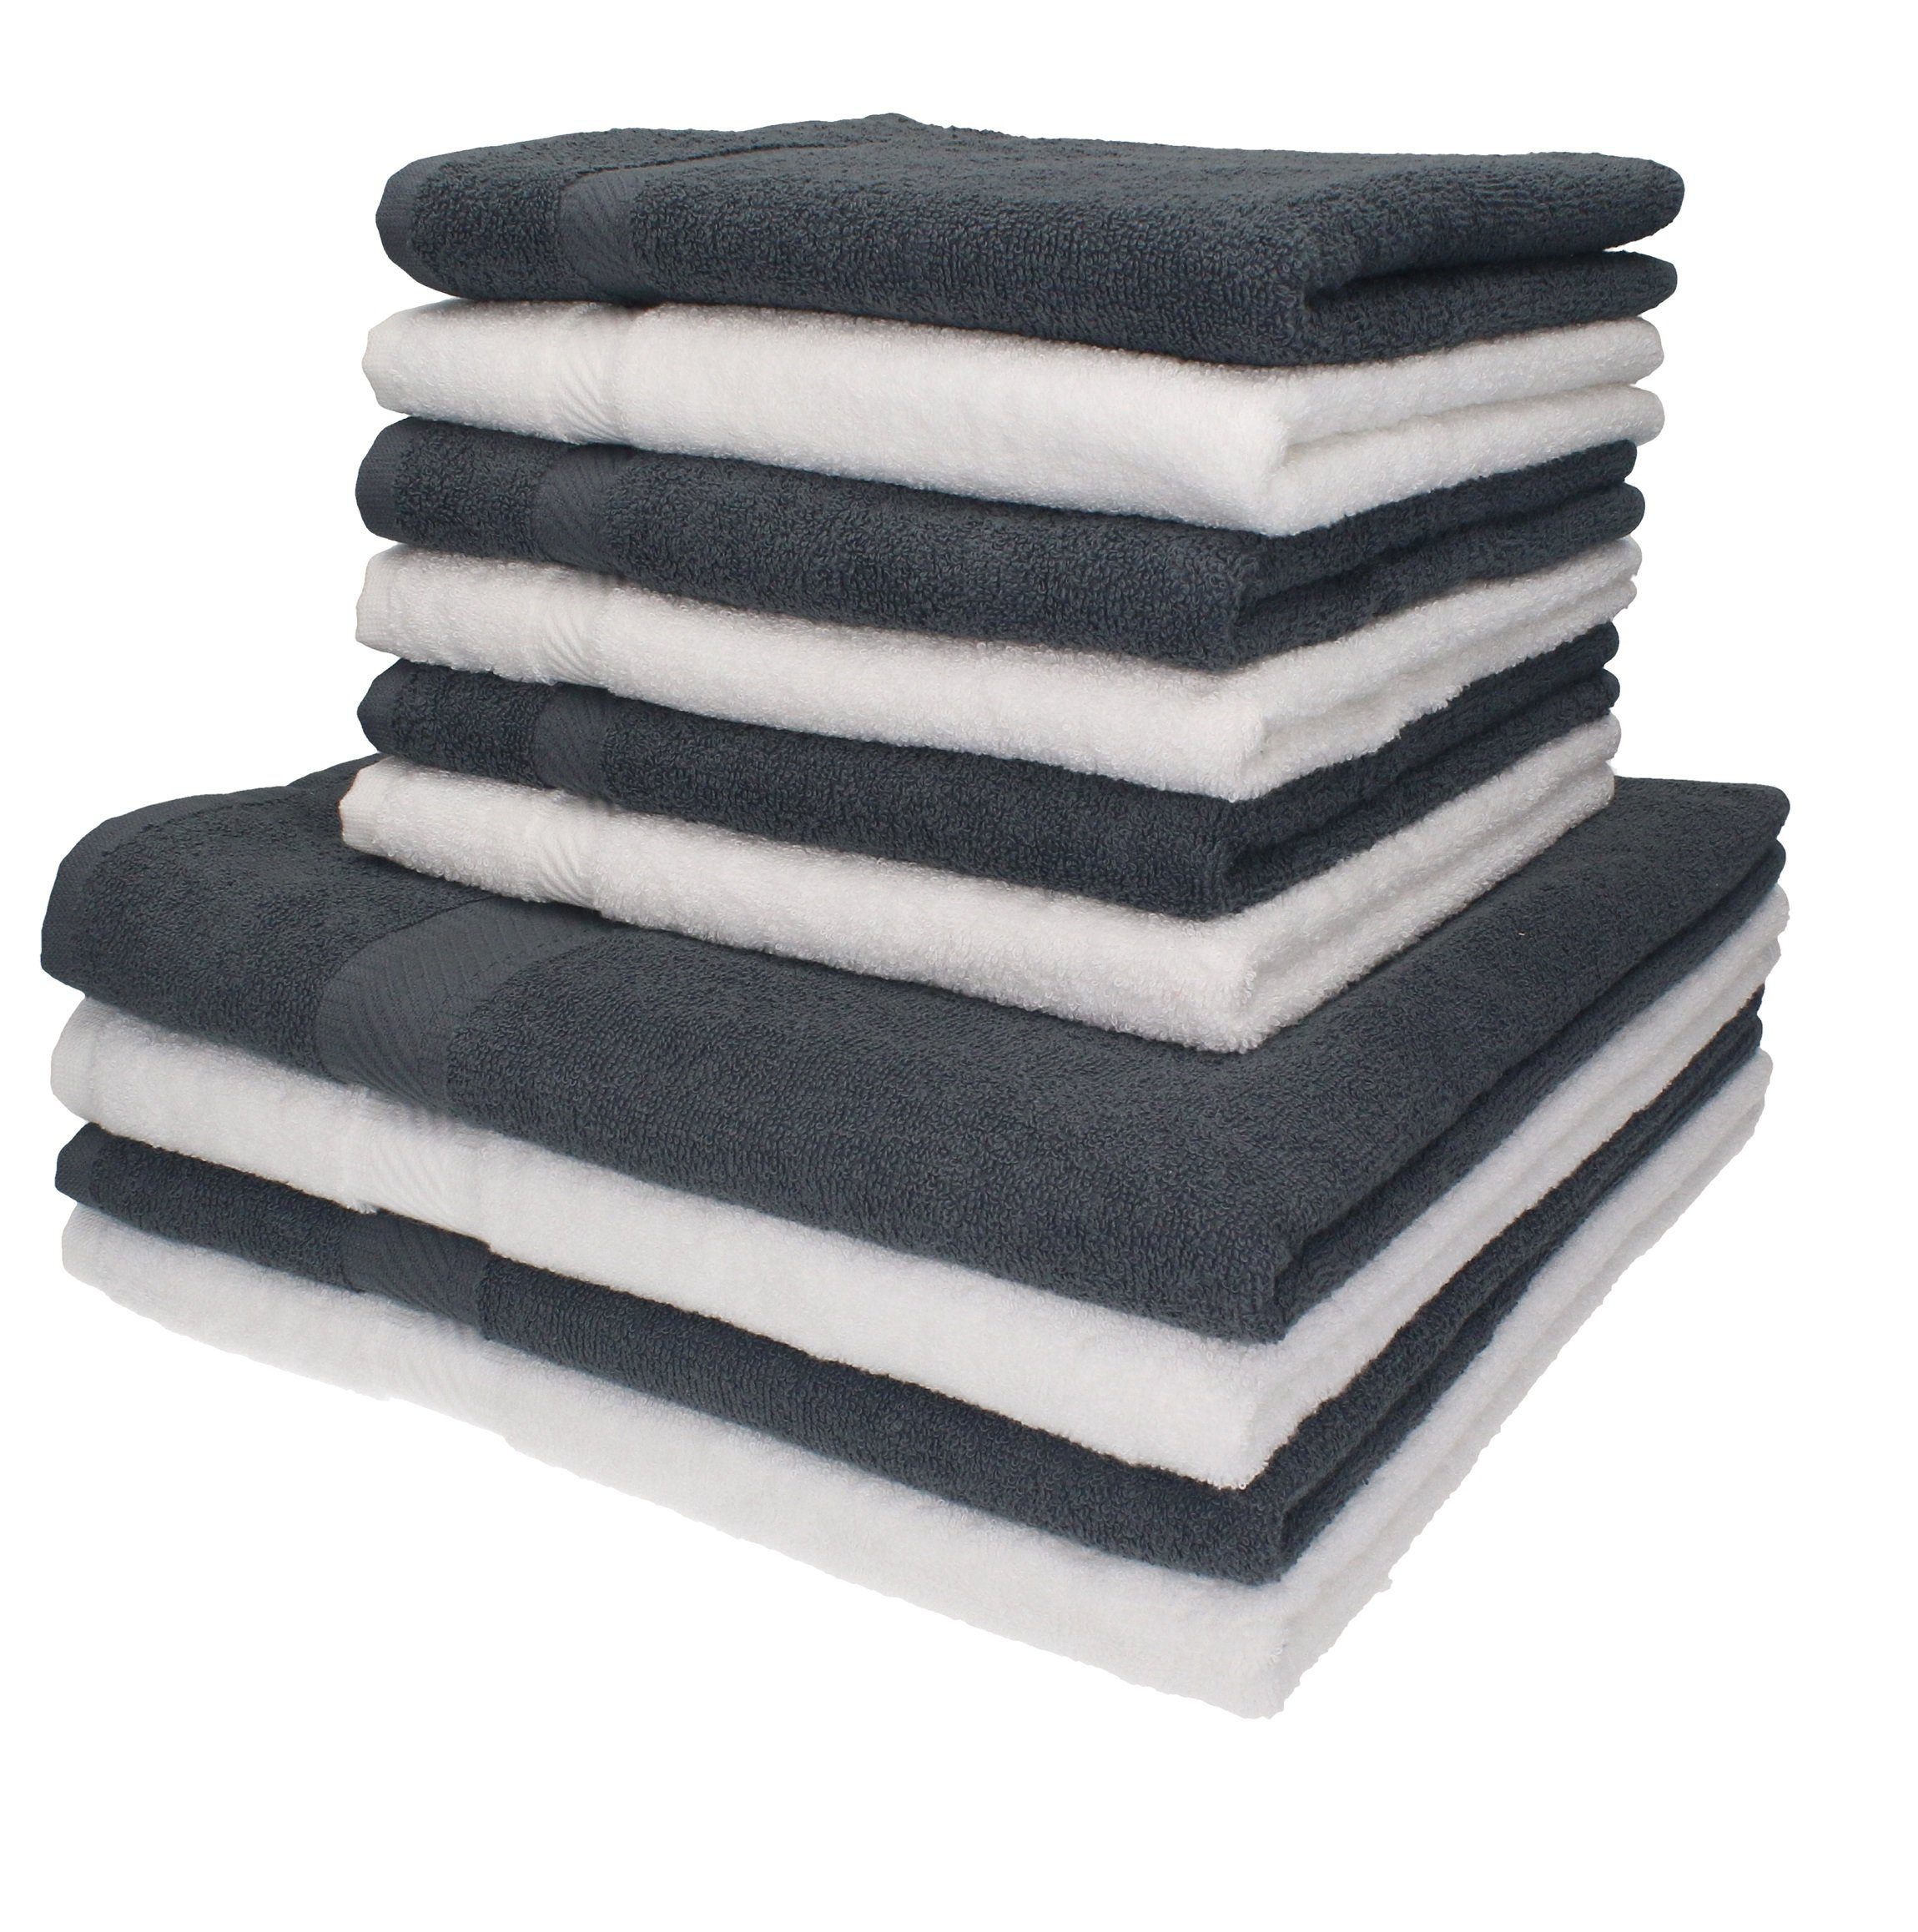 Discounter Betz Handtuch Set Set Palermo Handtücher 10-tlg. weiß/anthrazit, Duschtücher Farbe Baumwolle 4 6 100